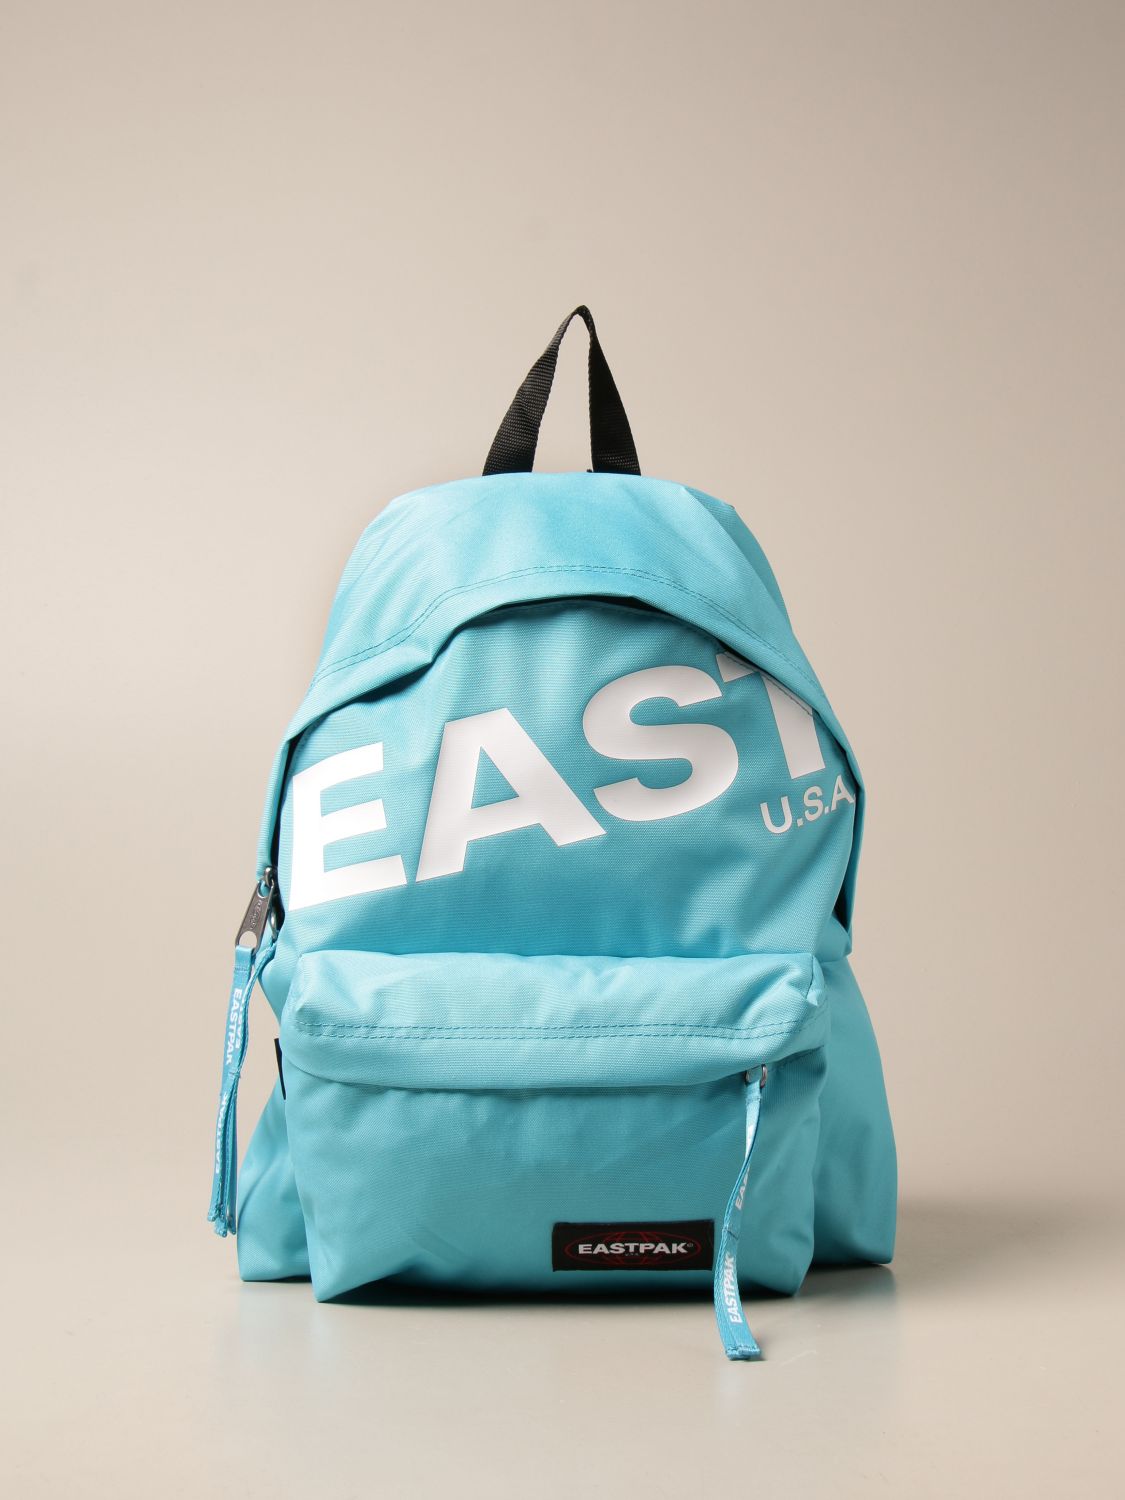 Voornaamwoord wees gegroet Regelmatigheid EASTPAK: backpack for man - Turquoise | Eastpak backpack EK000620 online on  GIGLIO.COM